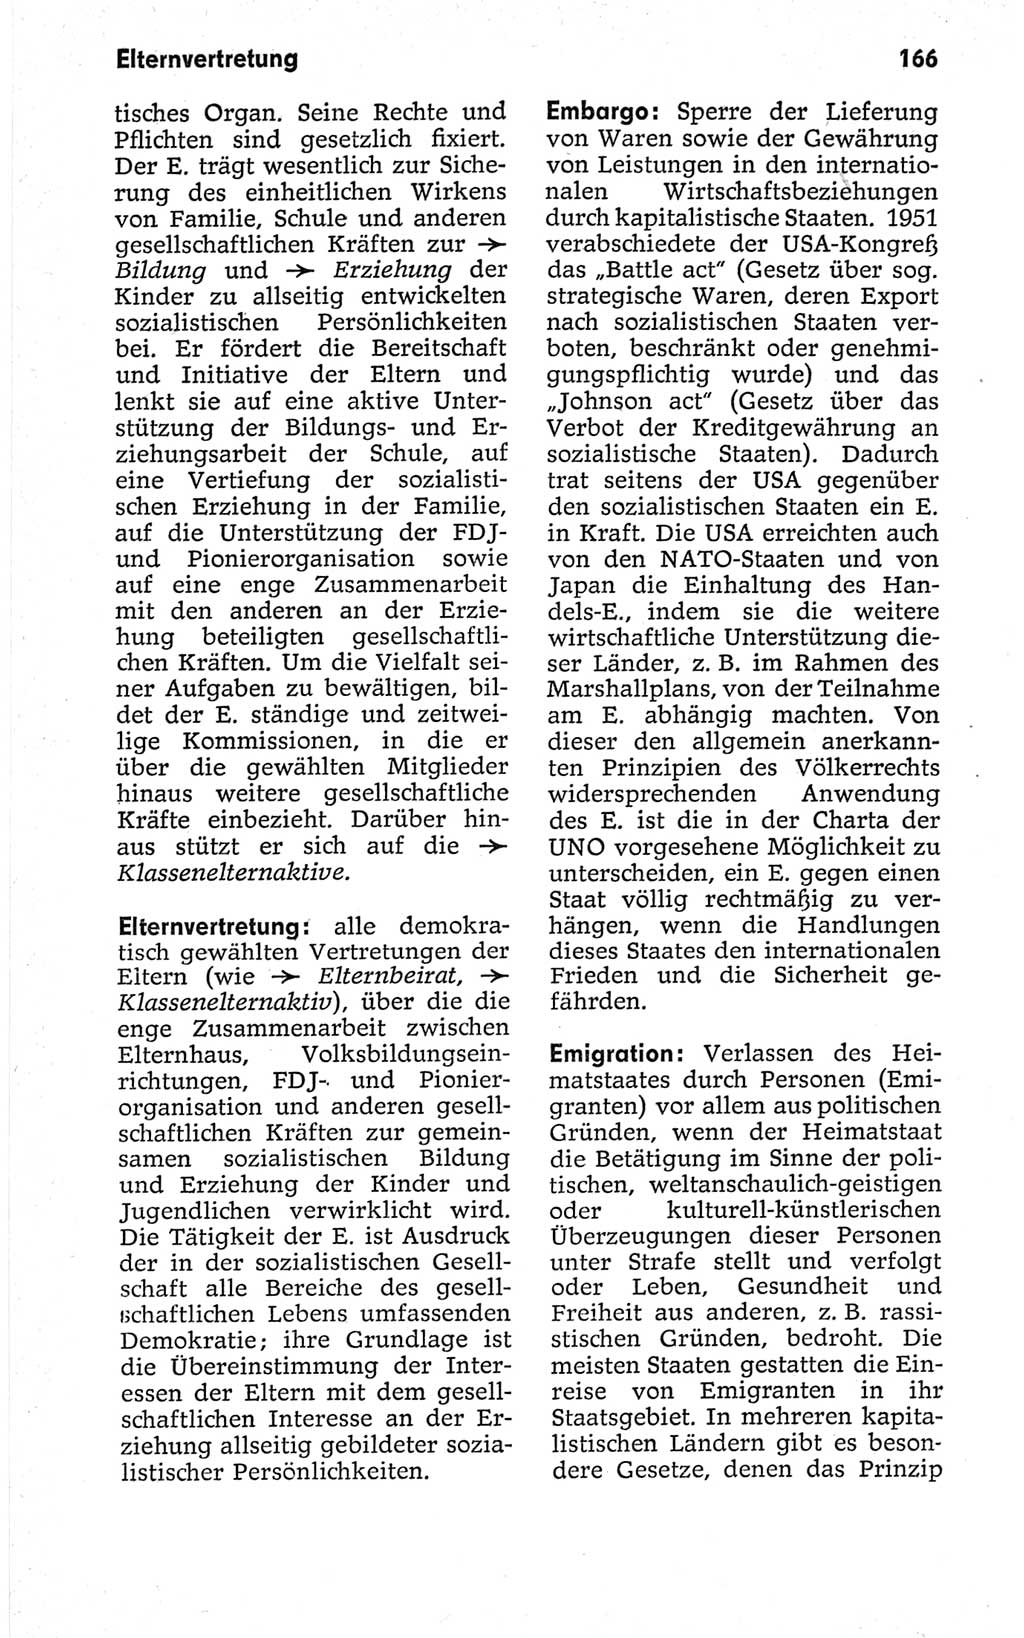 Kleines politisches Wörterbuch [Deutsche Demokratische Republik (DDR)] 1967, Seite 166 (Kl. pol. Wb. DDR 1967, S. 166)